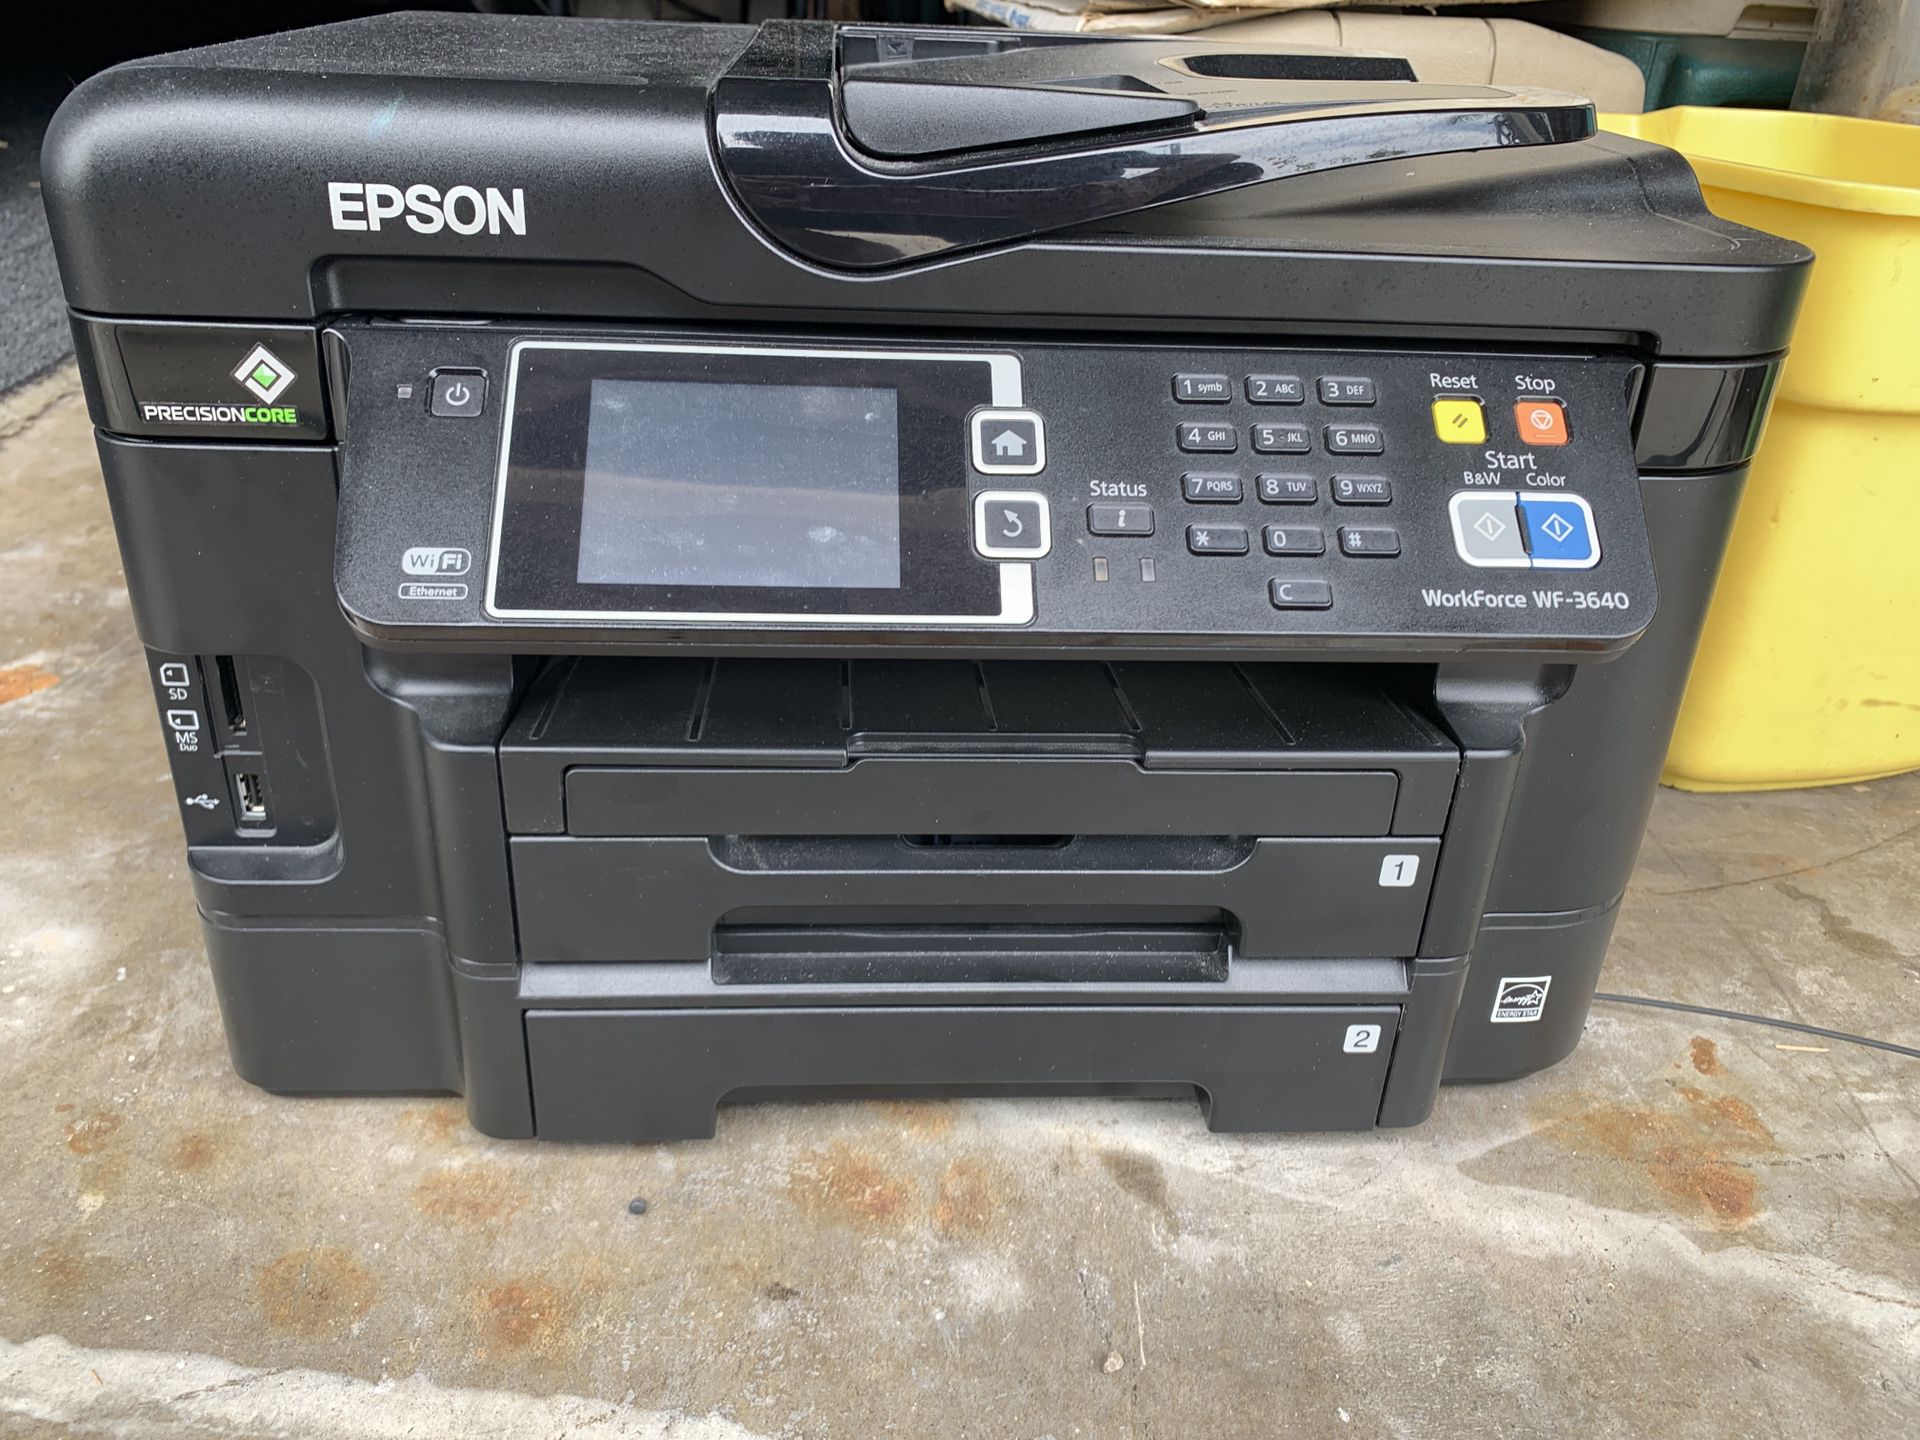 Epson Workforce Wf 3640 All In One Printerscannerfax For Sale In Orange Ca Offerup 6656